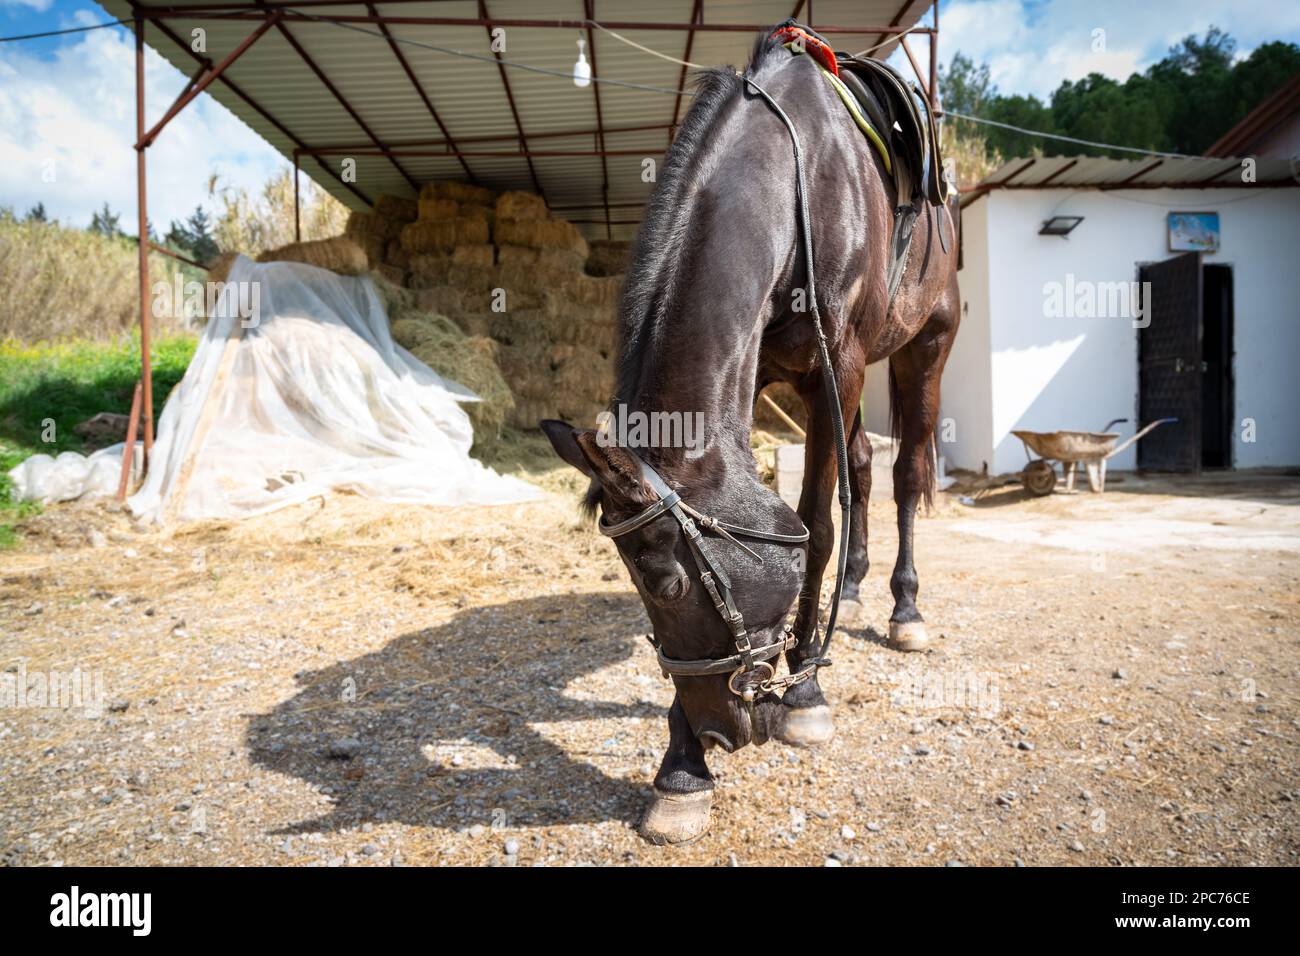 Cheval d'entraînement avec selle préparé pour l'entraînement dans une école d'équitation à Adana, Turquie. Le cheval accueille le public. Banque D'Images